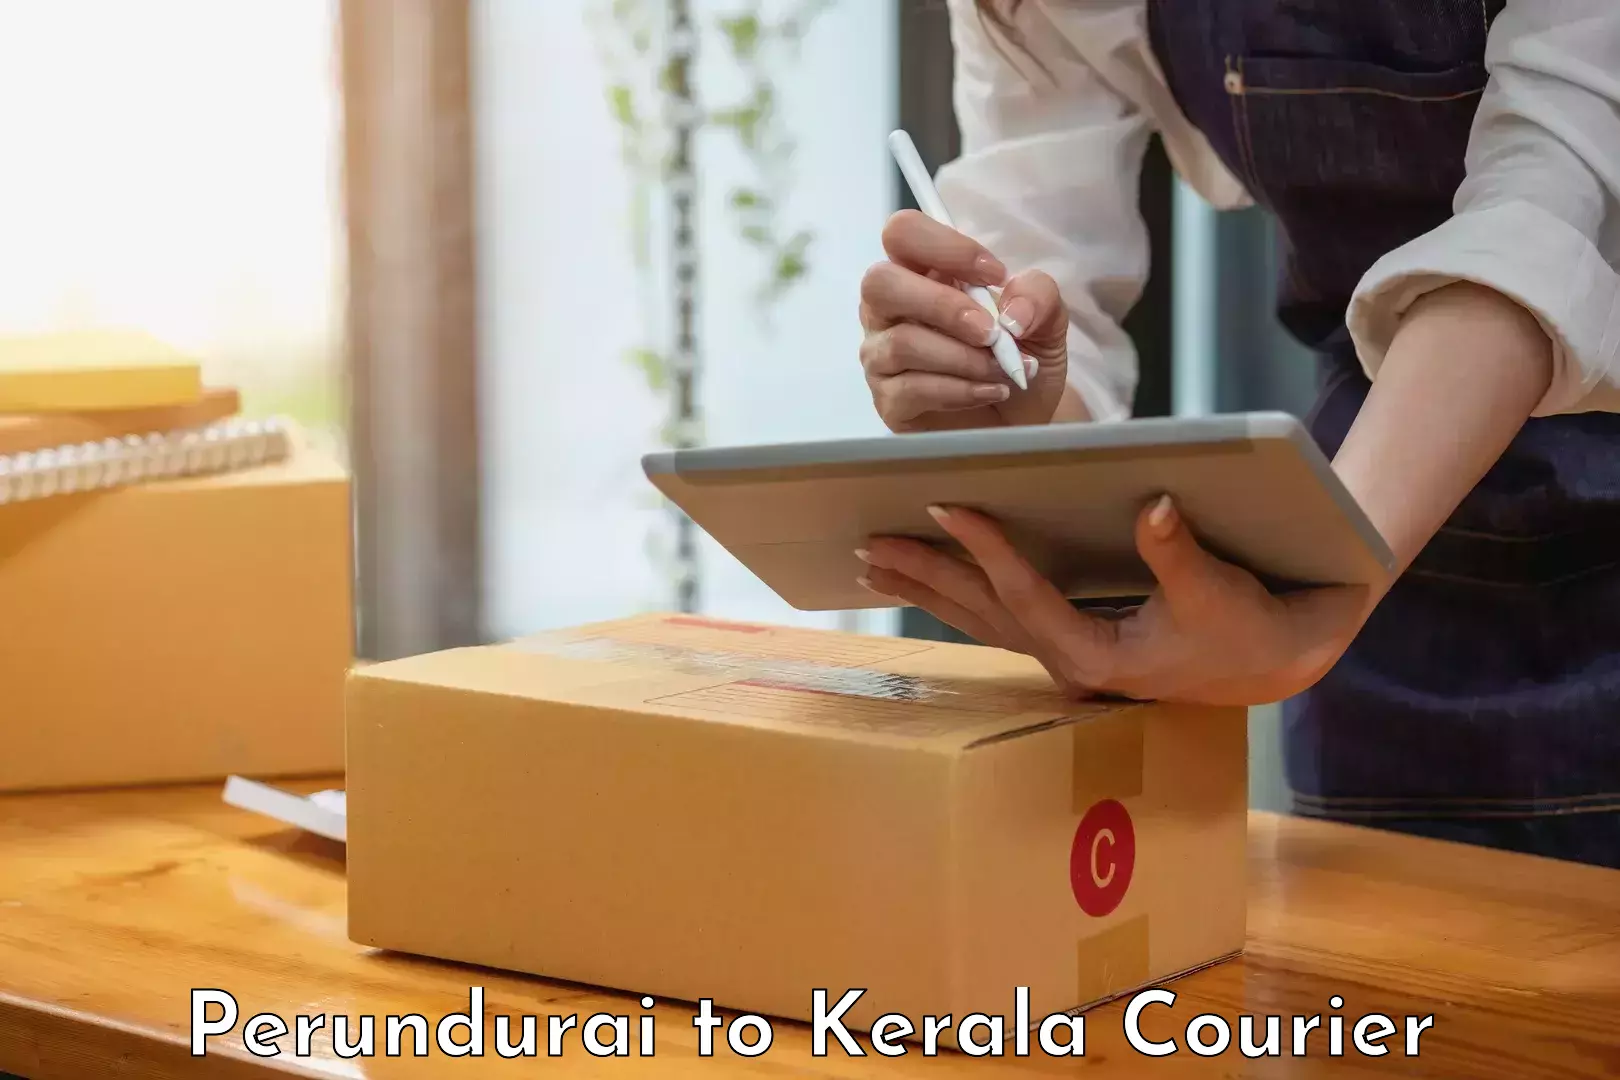 Customer-oriented courier services Perundurai to Thrissur